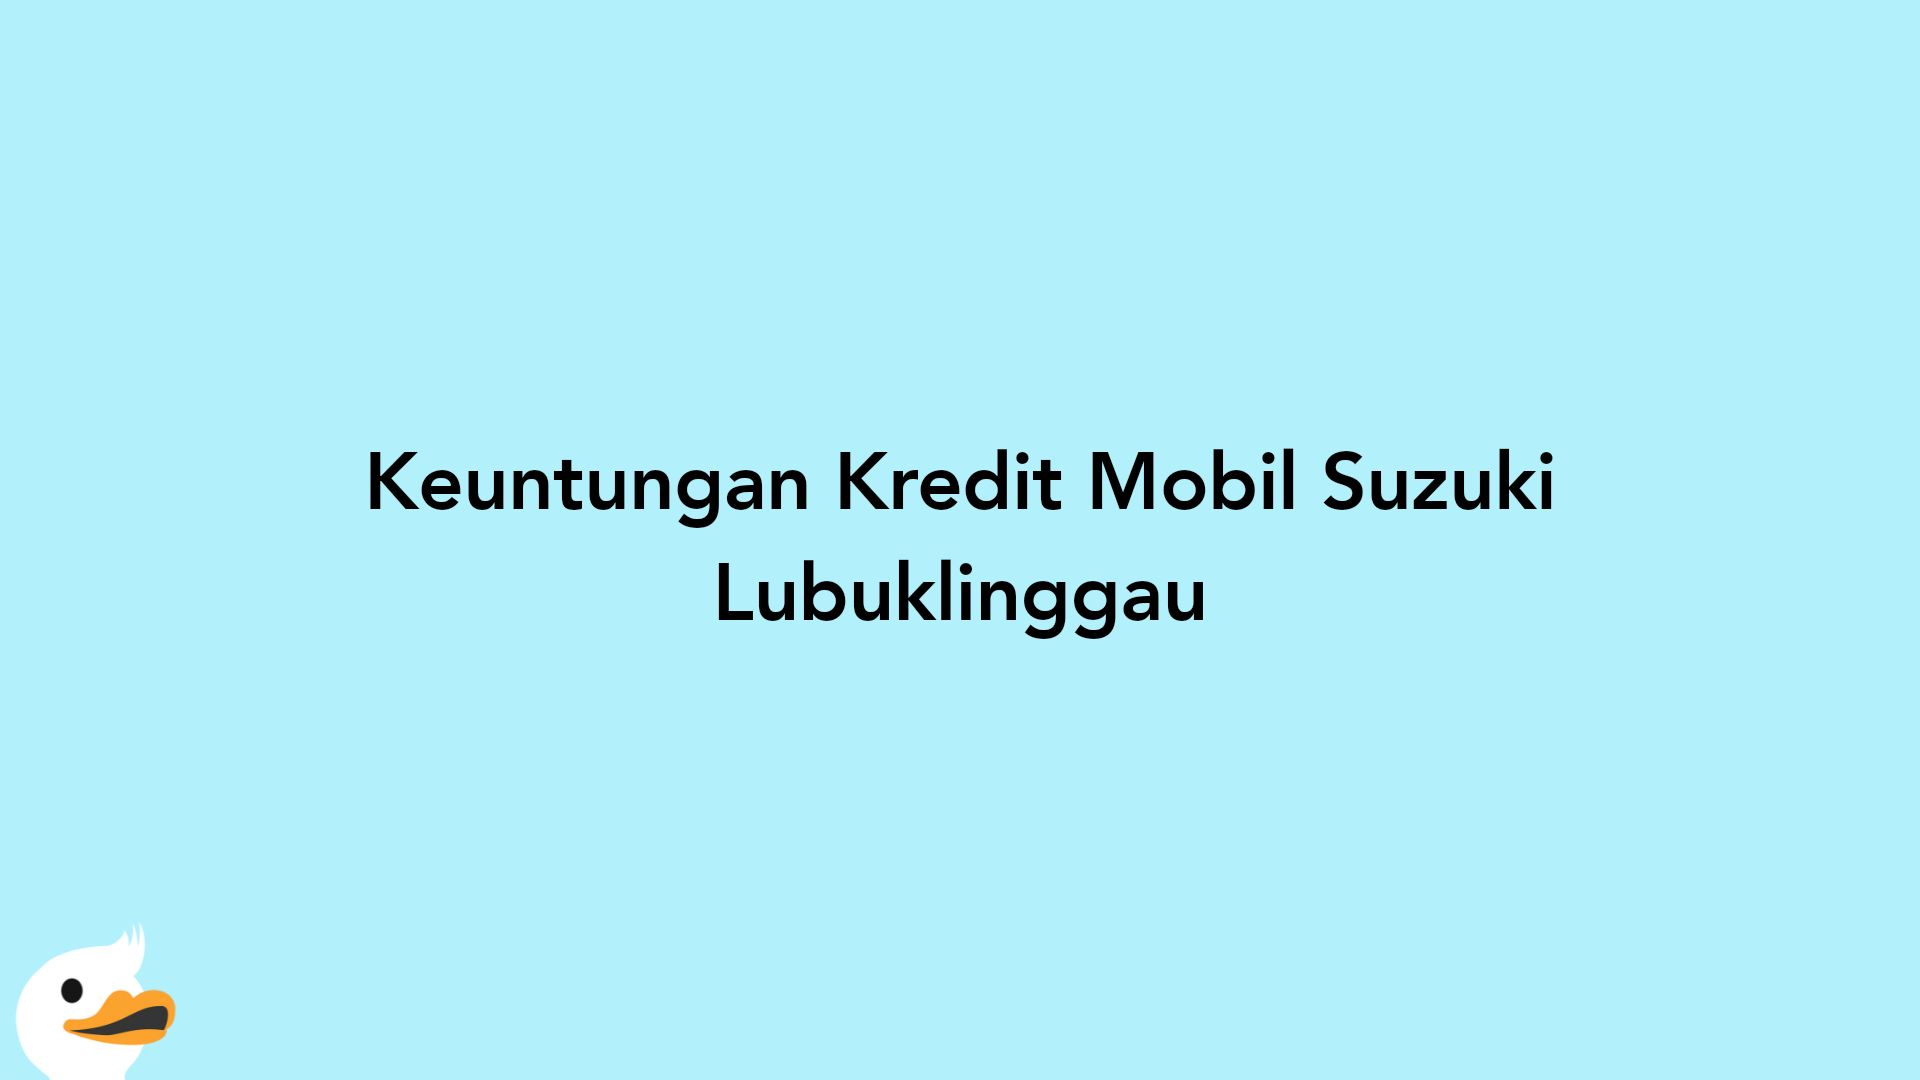 Keuntungan Kredit Mobil Suzuki Lubuklinggau